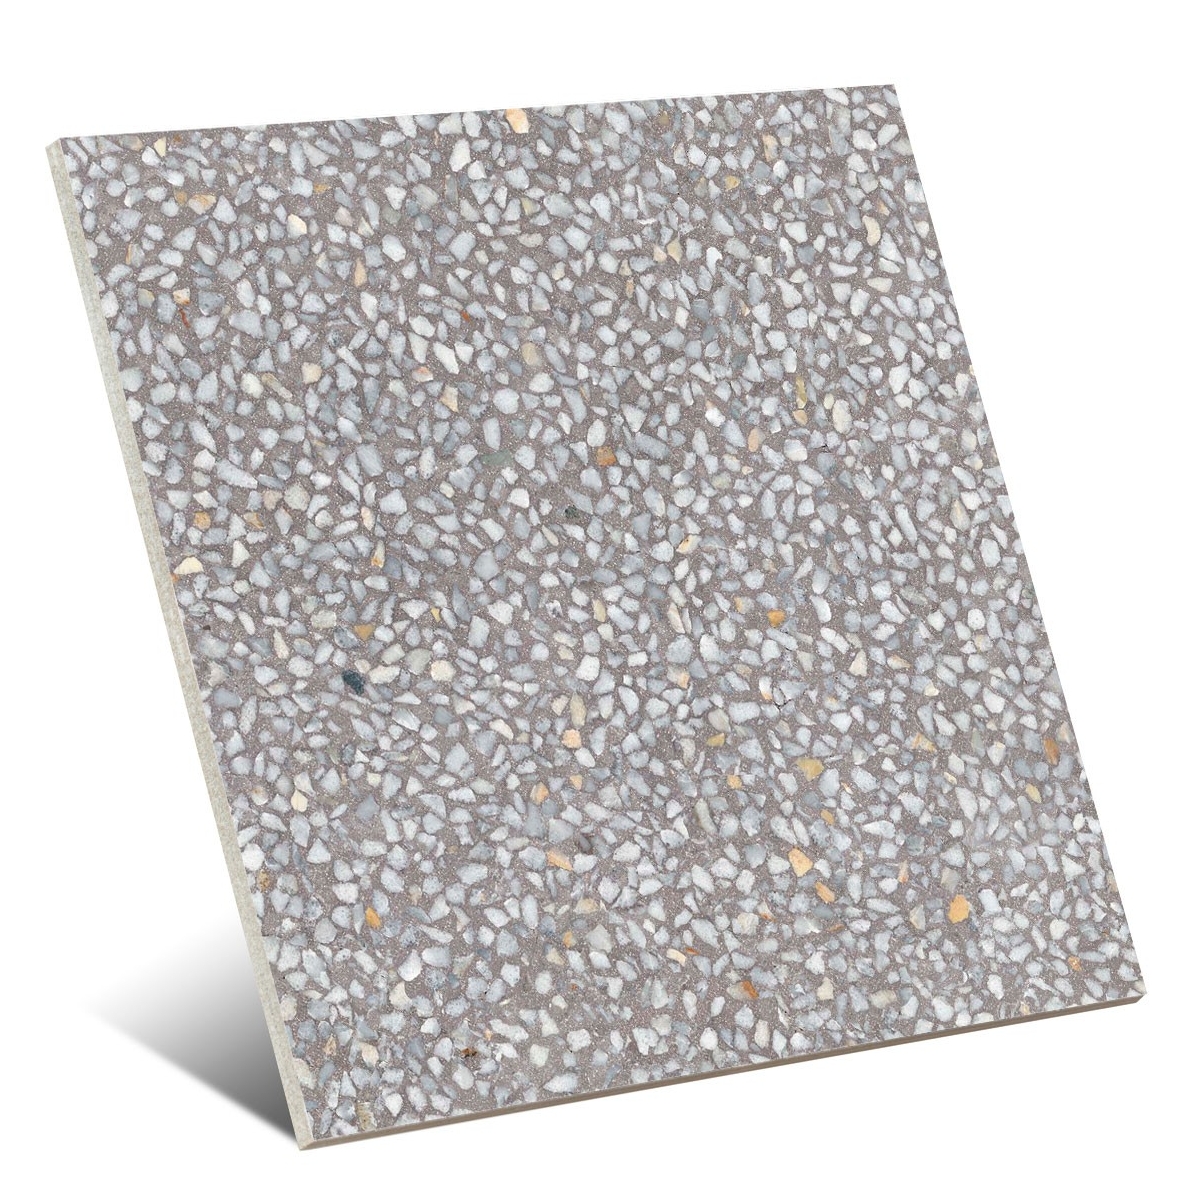 Cimento Portofino 60x60 (caixa 1,08 m2)